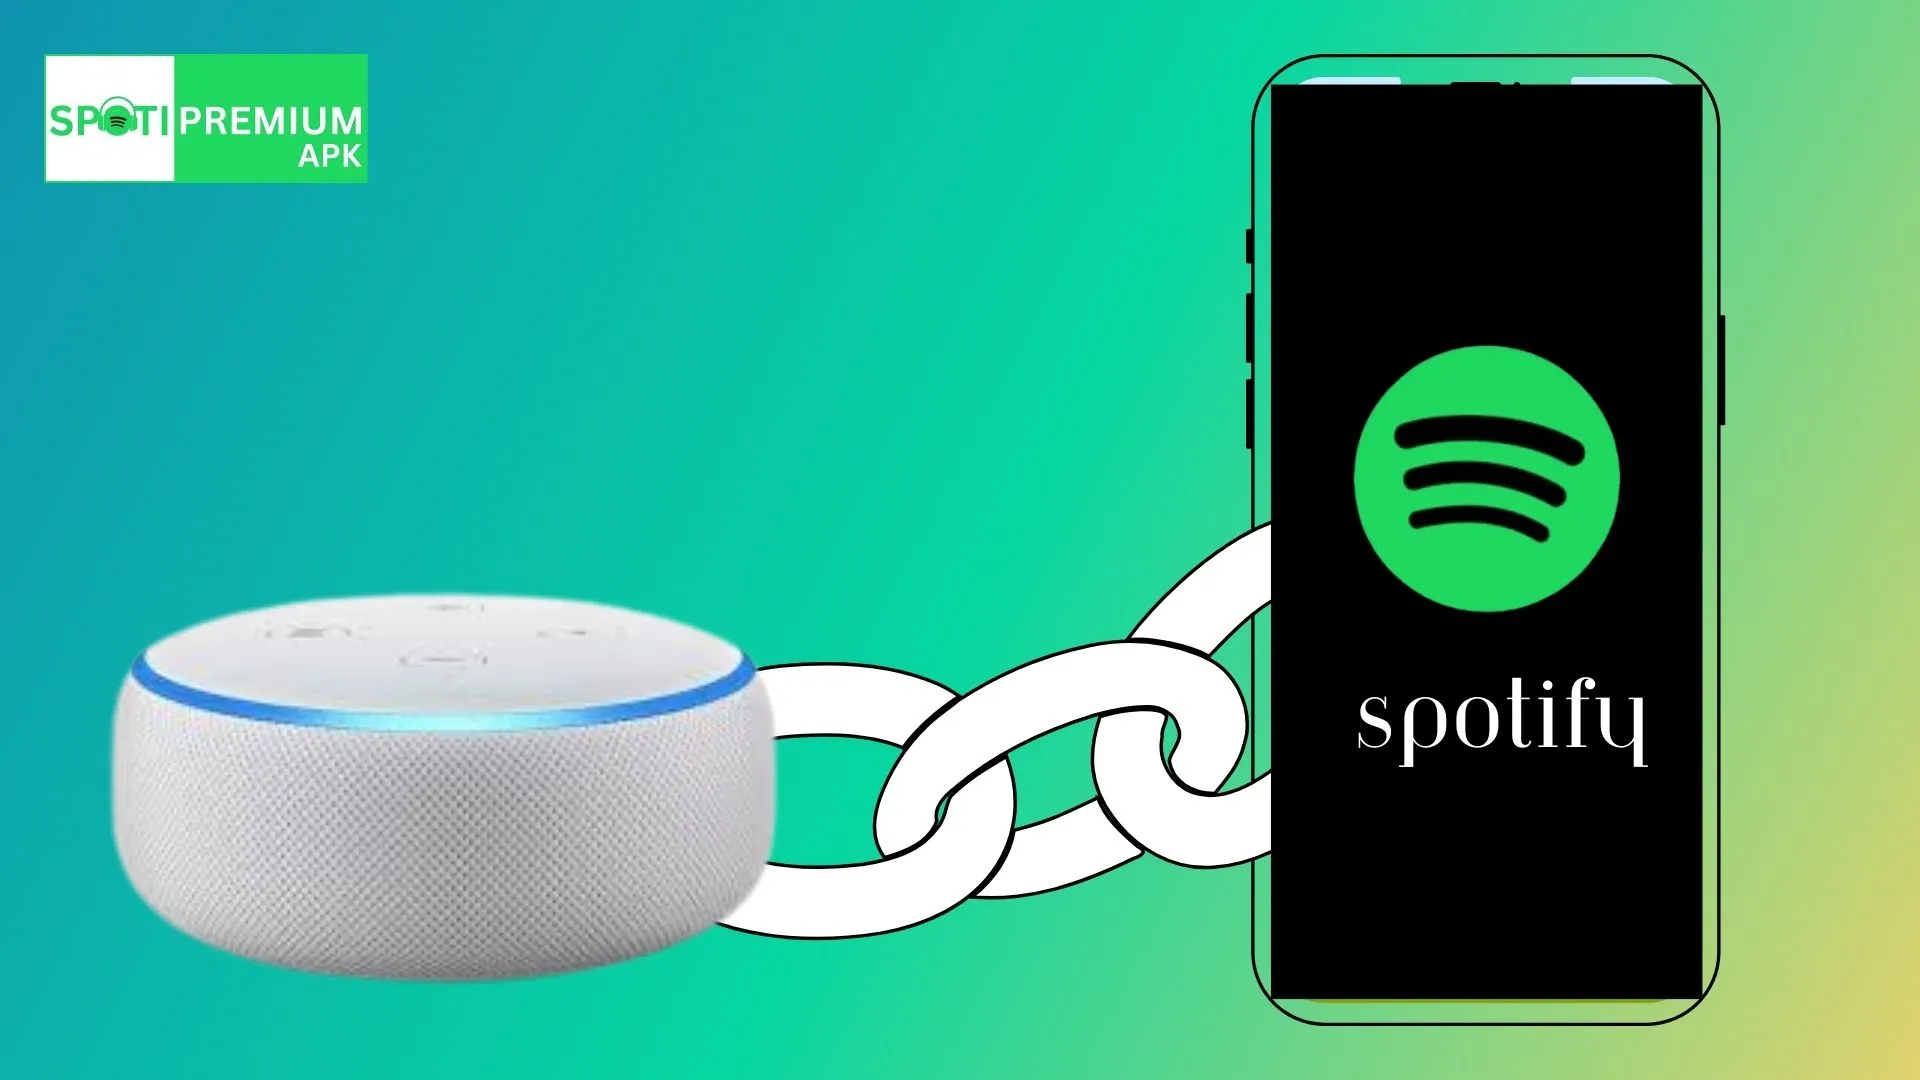 ¿Cómo conectar Spotify a Alexa?